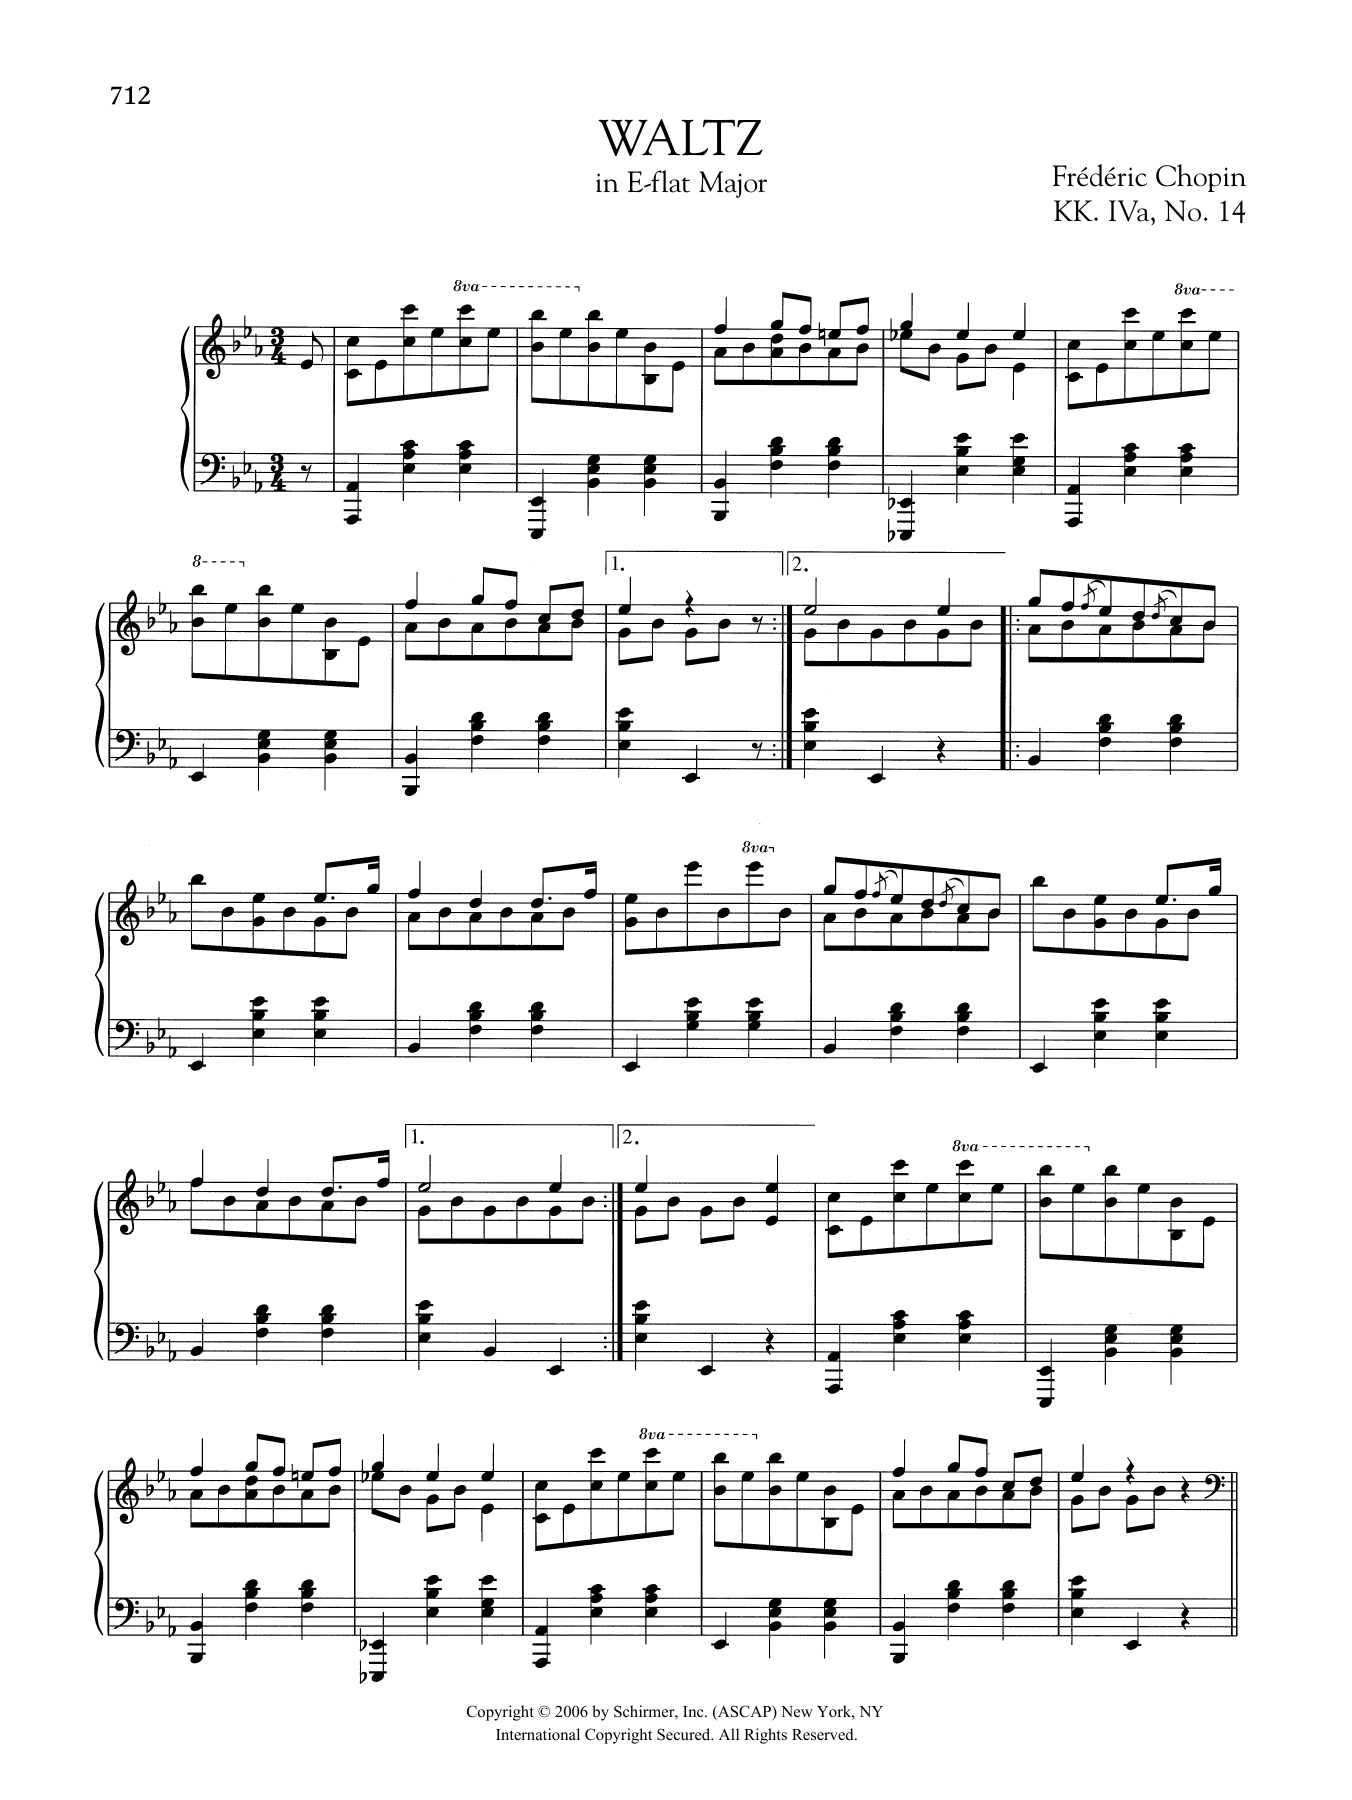 Waltz in E-flat Major, KK. IVa, No. 14 (Piano Solo) von Frdric Chopin